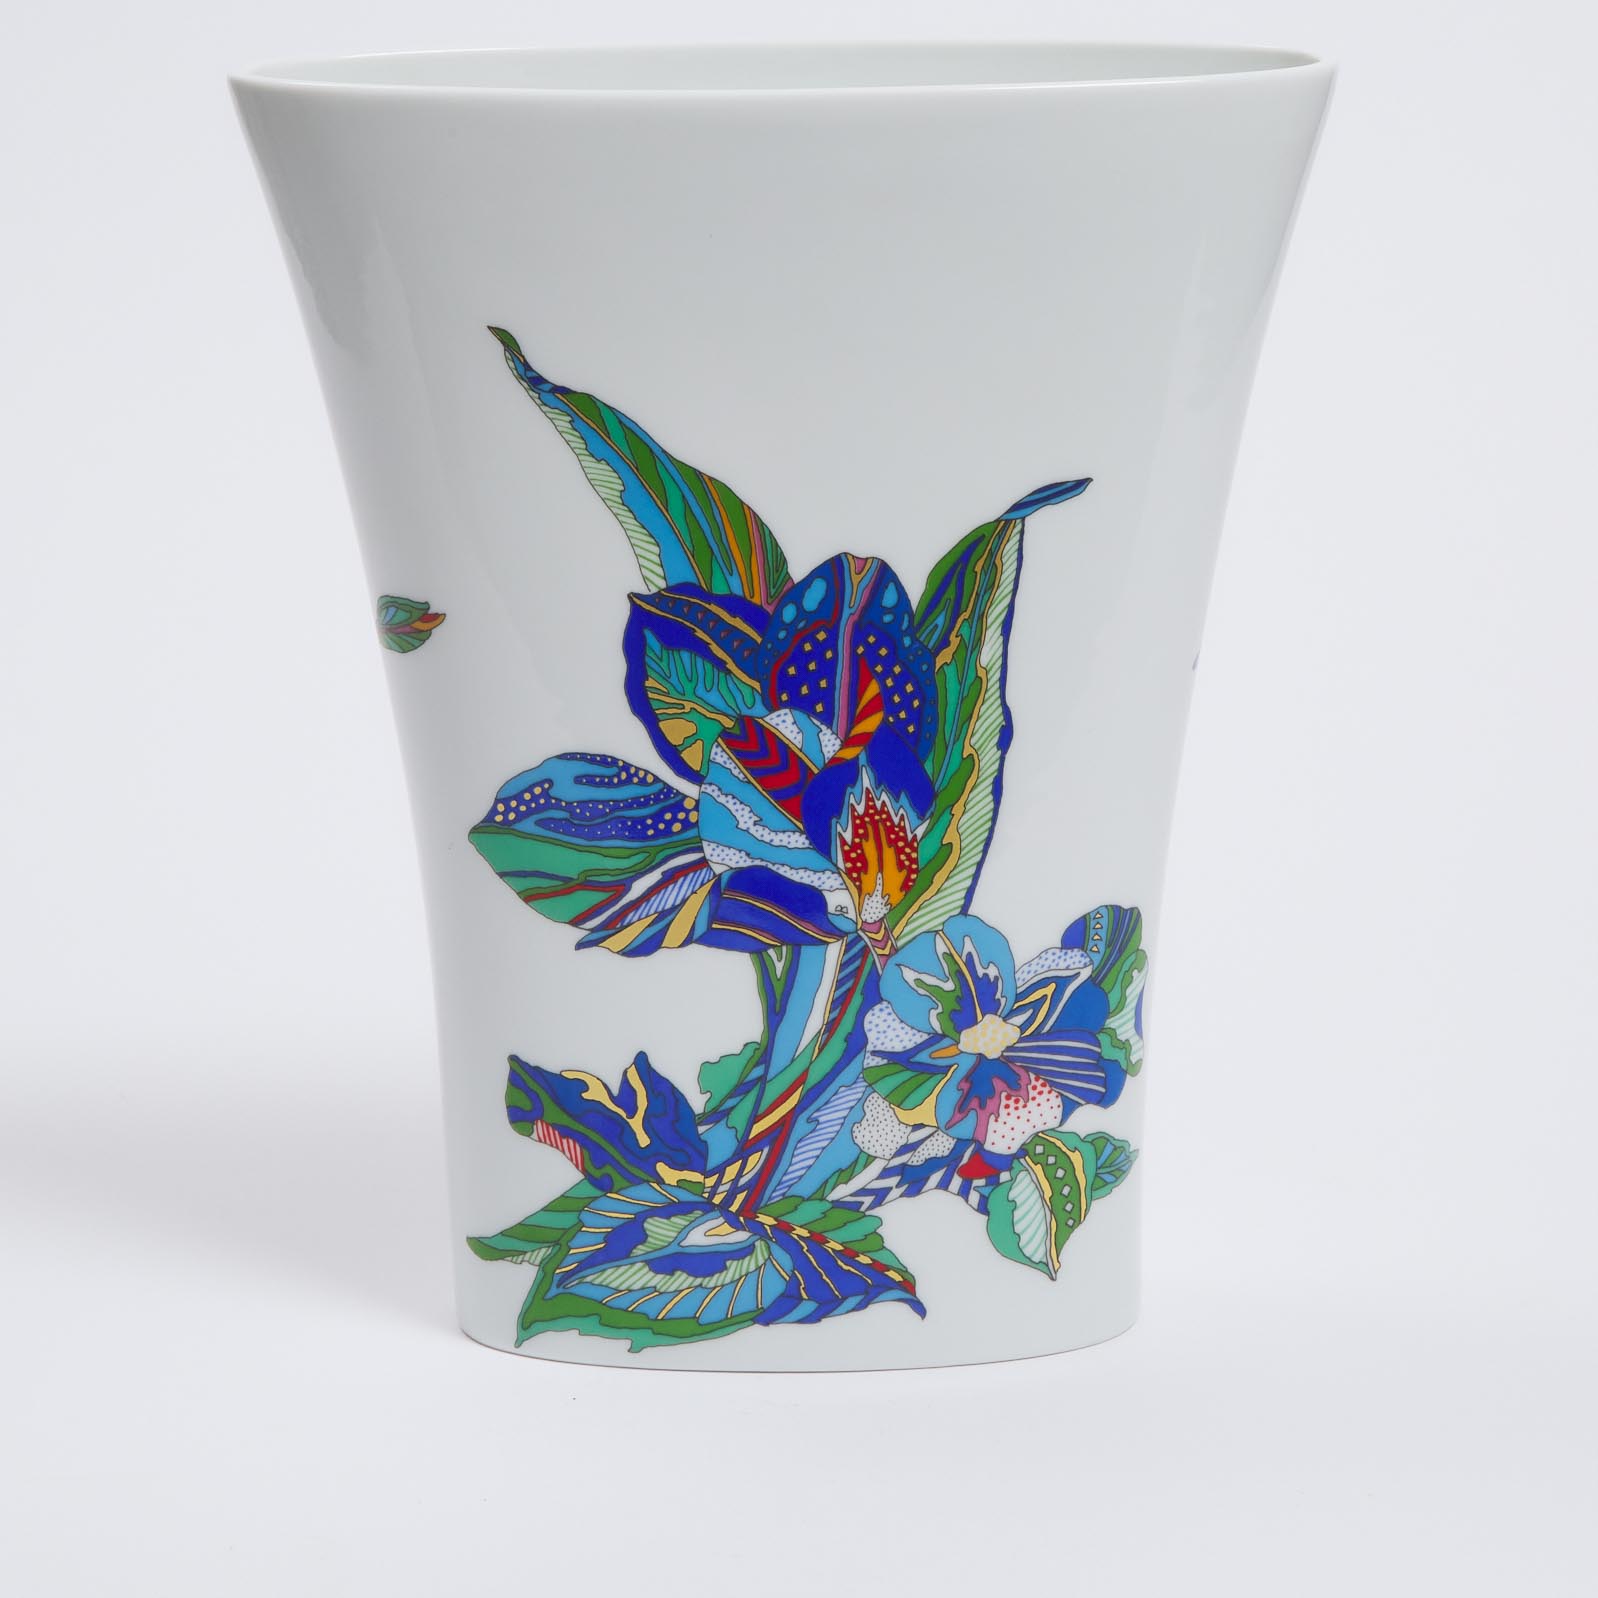 Rosenthal Vase, Elsa Fischer Treyden, late 20th century